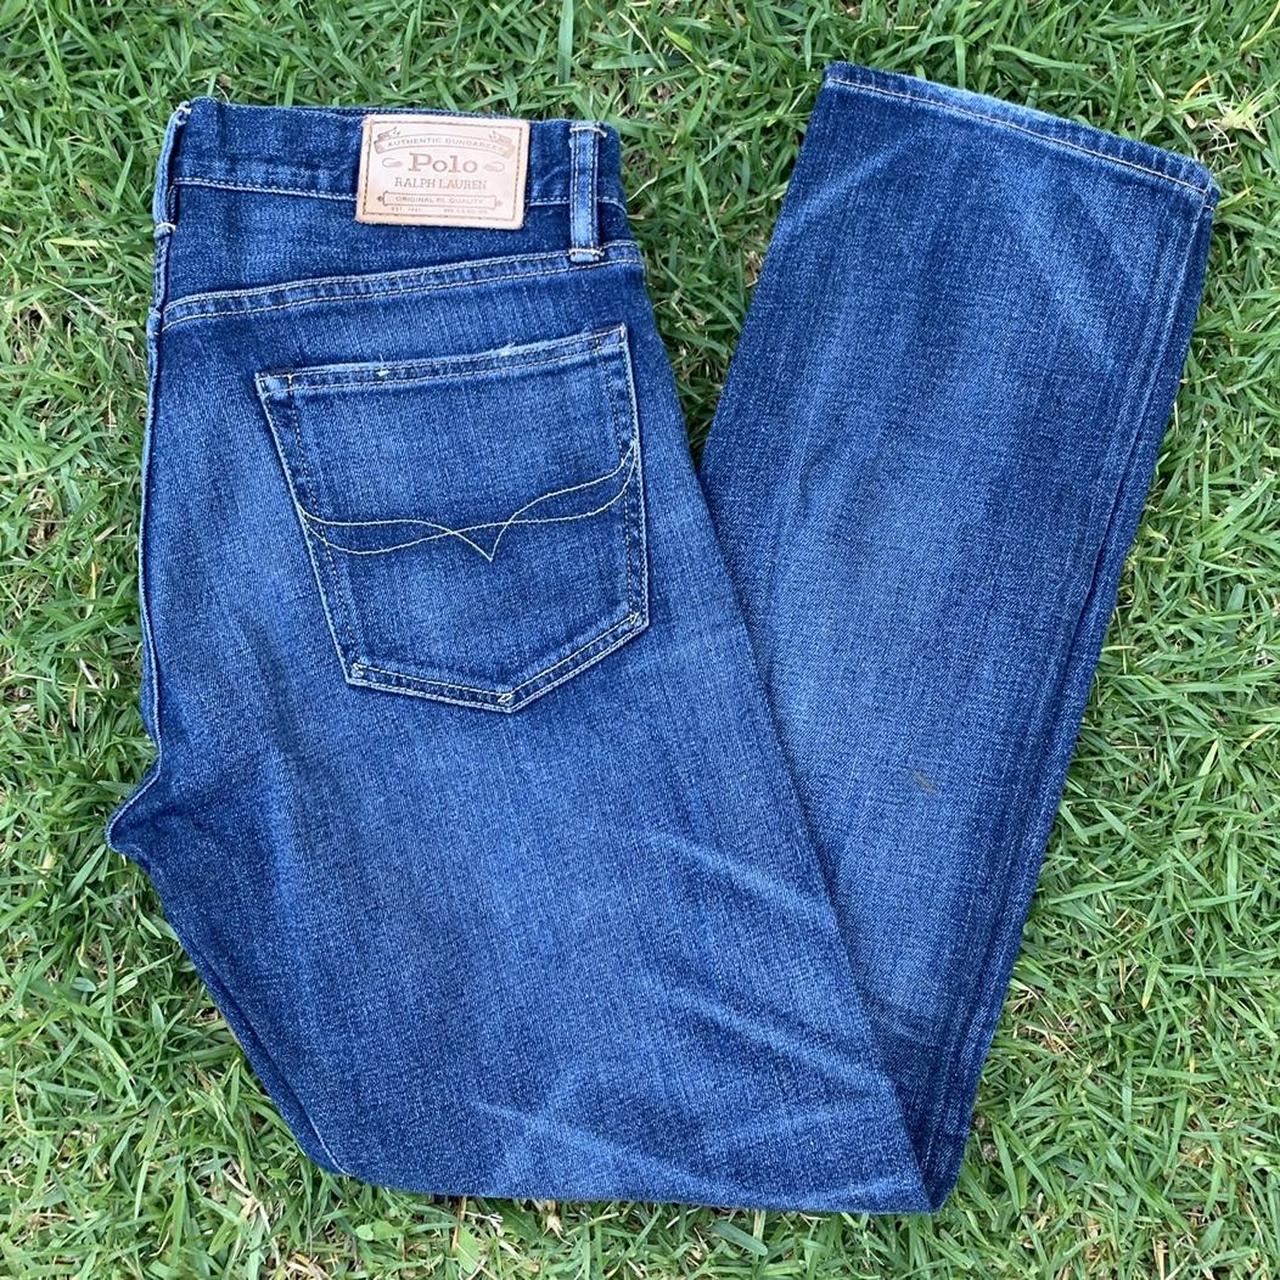 Polo ralph lauren jeans 33x30 Vintage, store,... - Depop